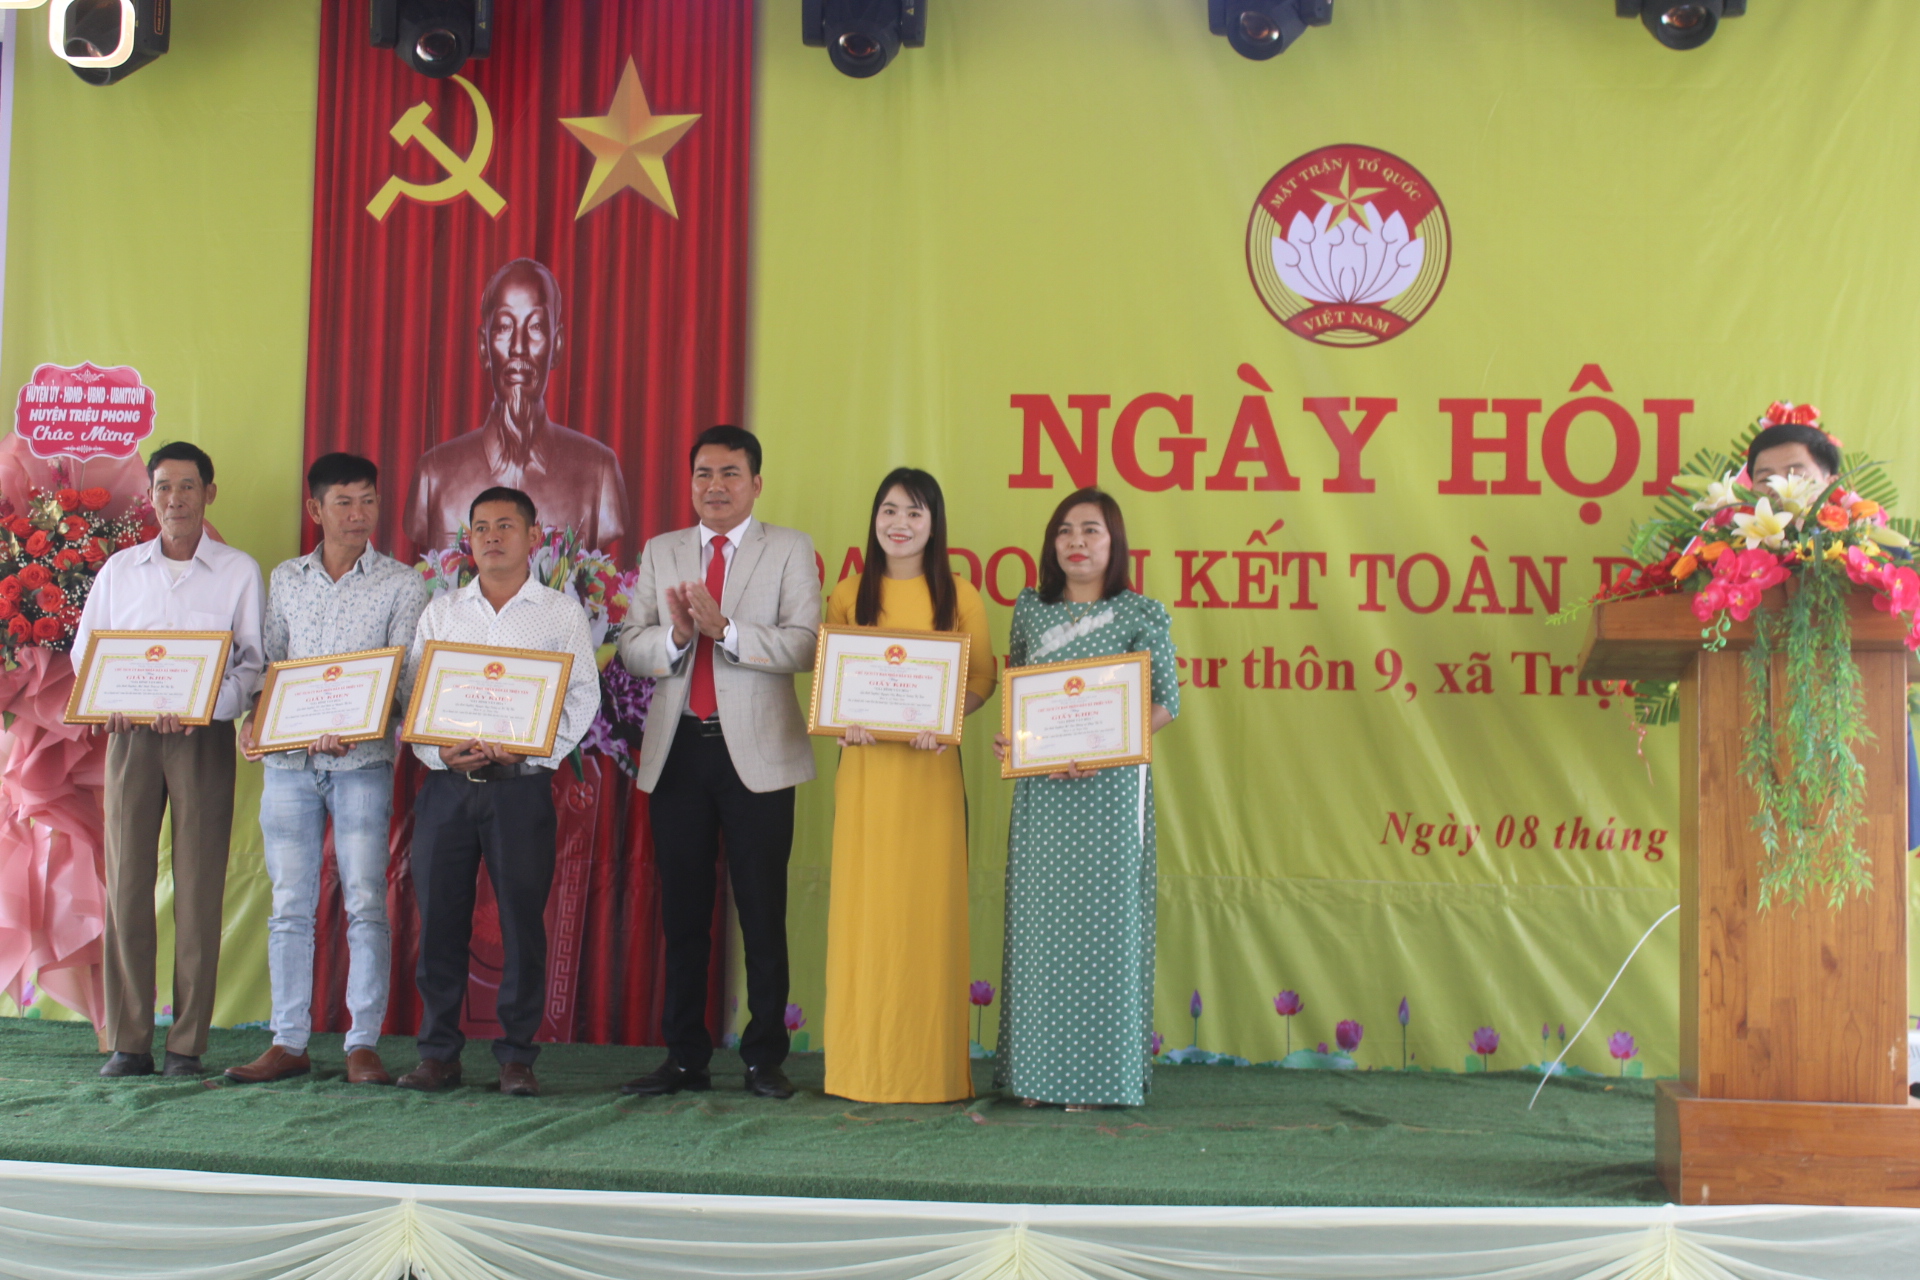 Ông Nguyễn Văn Lâm - Phó Bí thư Đảng ủy, CTUBND tặng giấy khen cho các hộ gia đình đạt gia đình văn hóa tiêu biểu